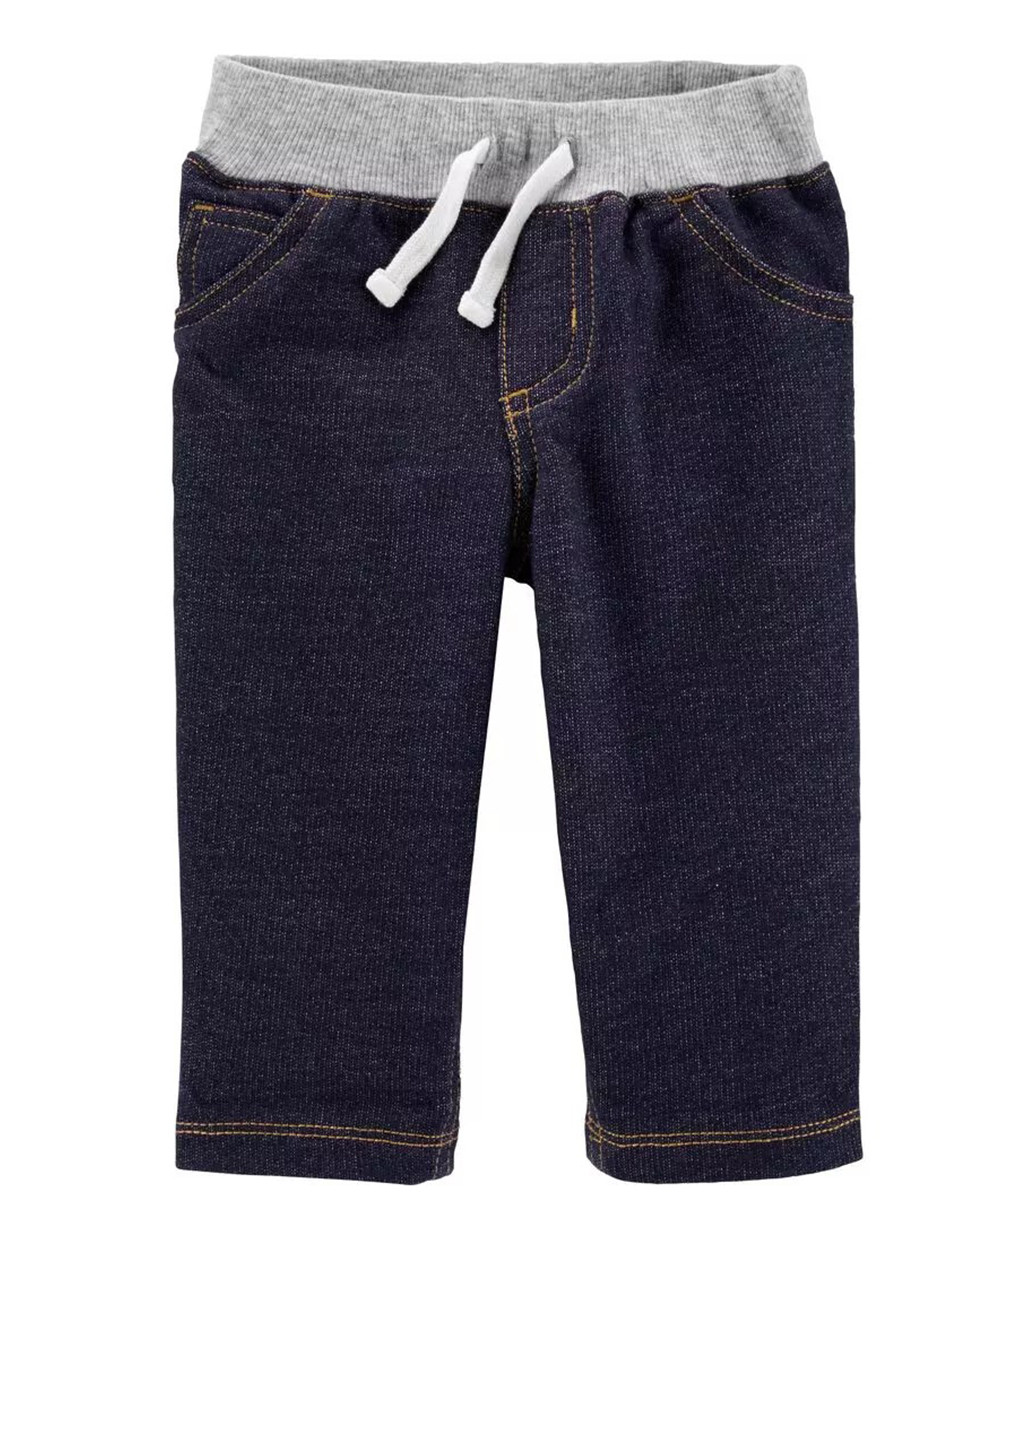 Синие джинсовые демисезонные брюки прямые Carter's